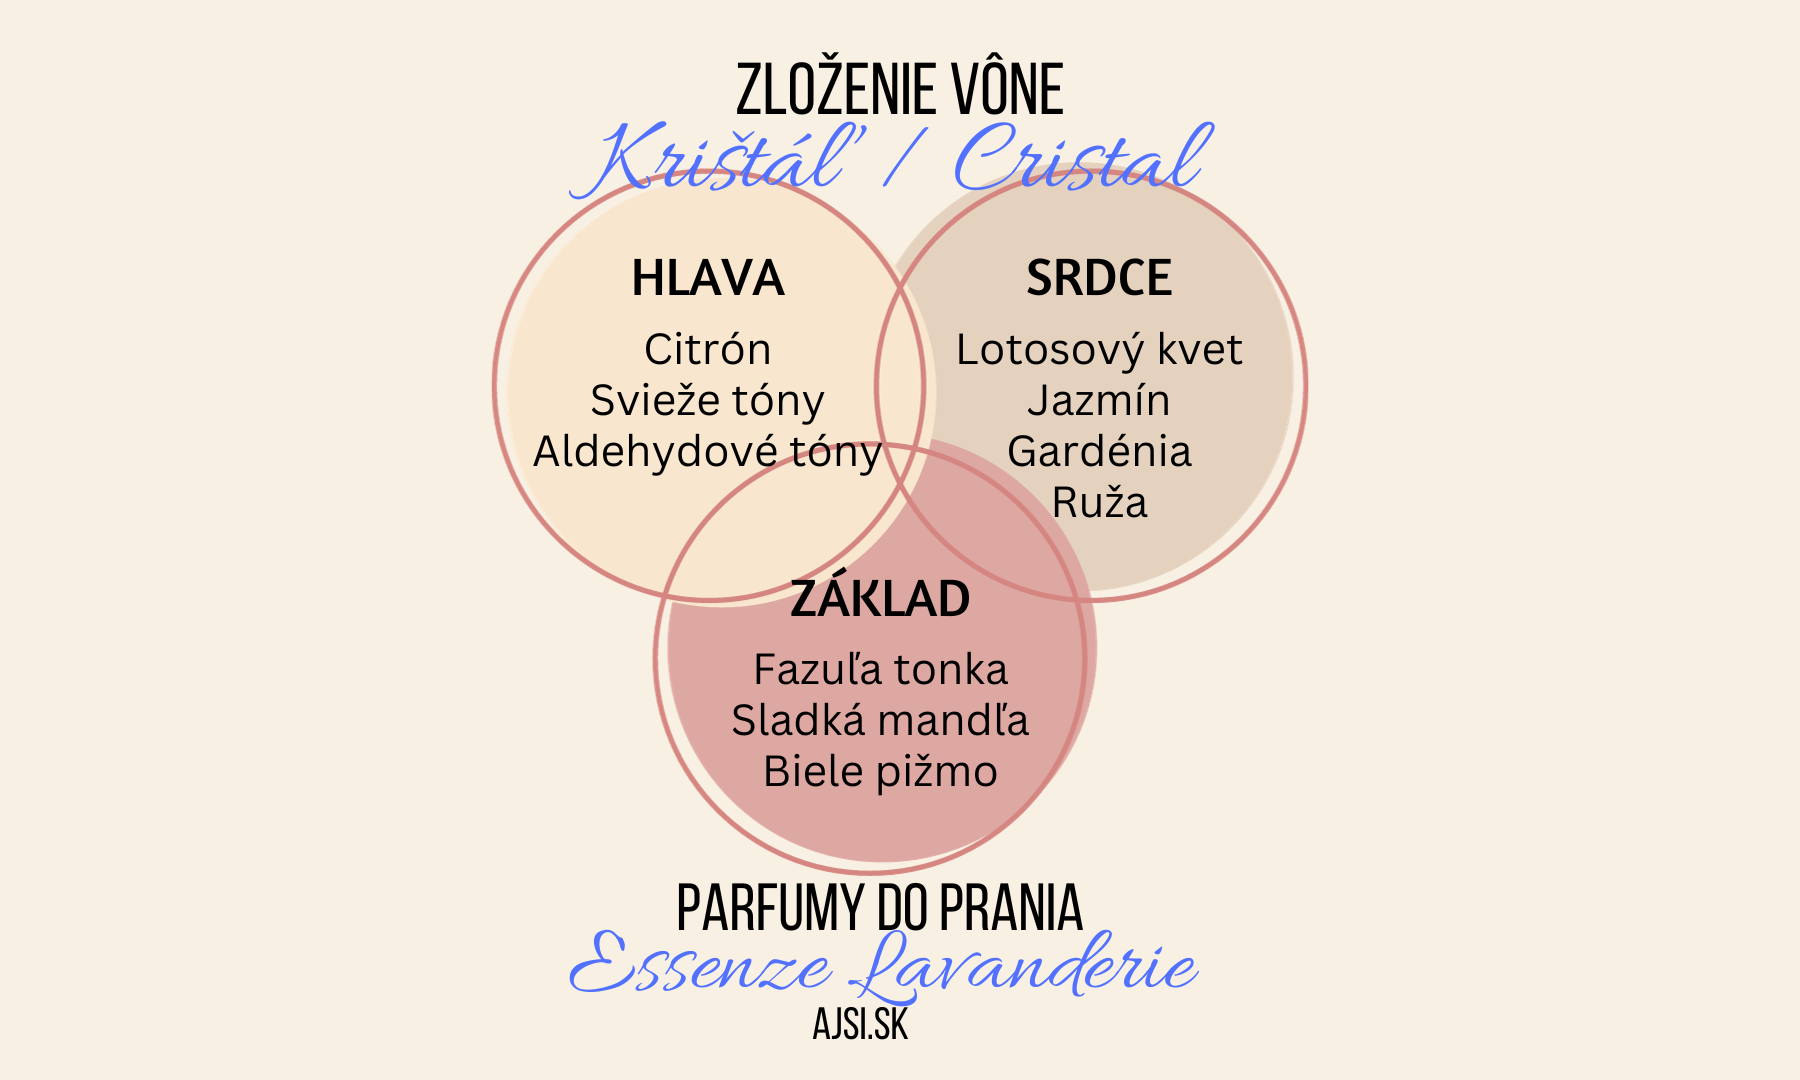 Cristal zloženie vône Essenze Lavanderie ajsi.sk